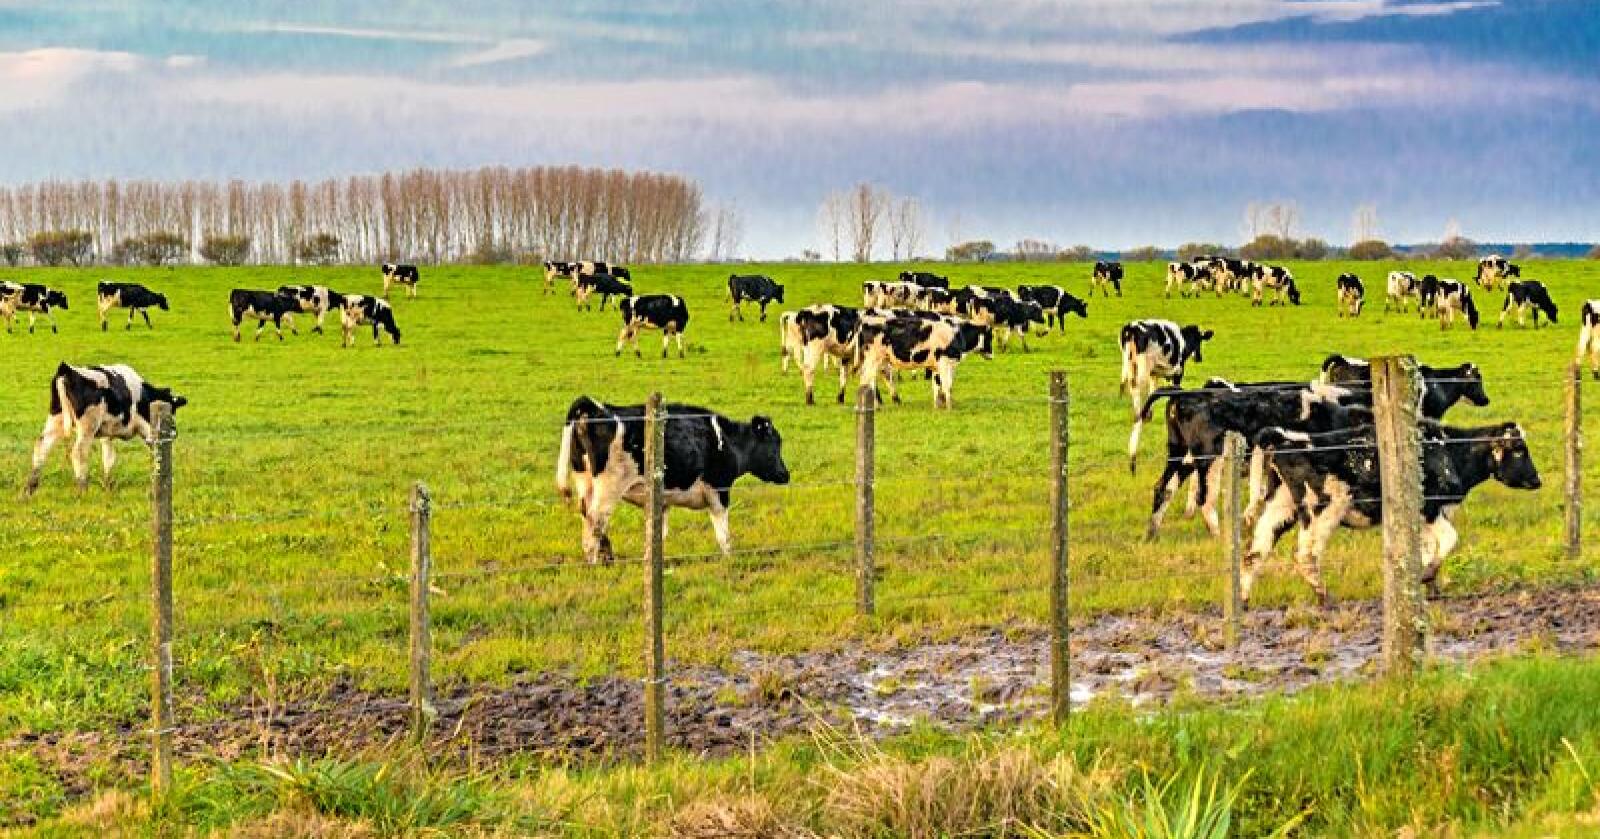 Uruguay er et av de store landbrukslandene i Sør-Amerika, med stor kjøtt- og melkeproduksjon. Foto: Daniel Ferreira-Leites Ciccari / Mostphotos